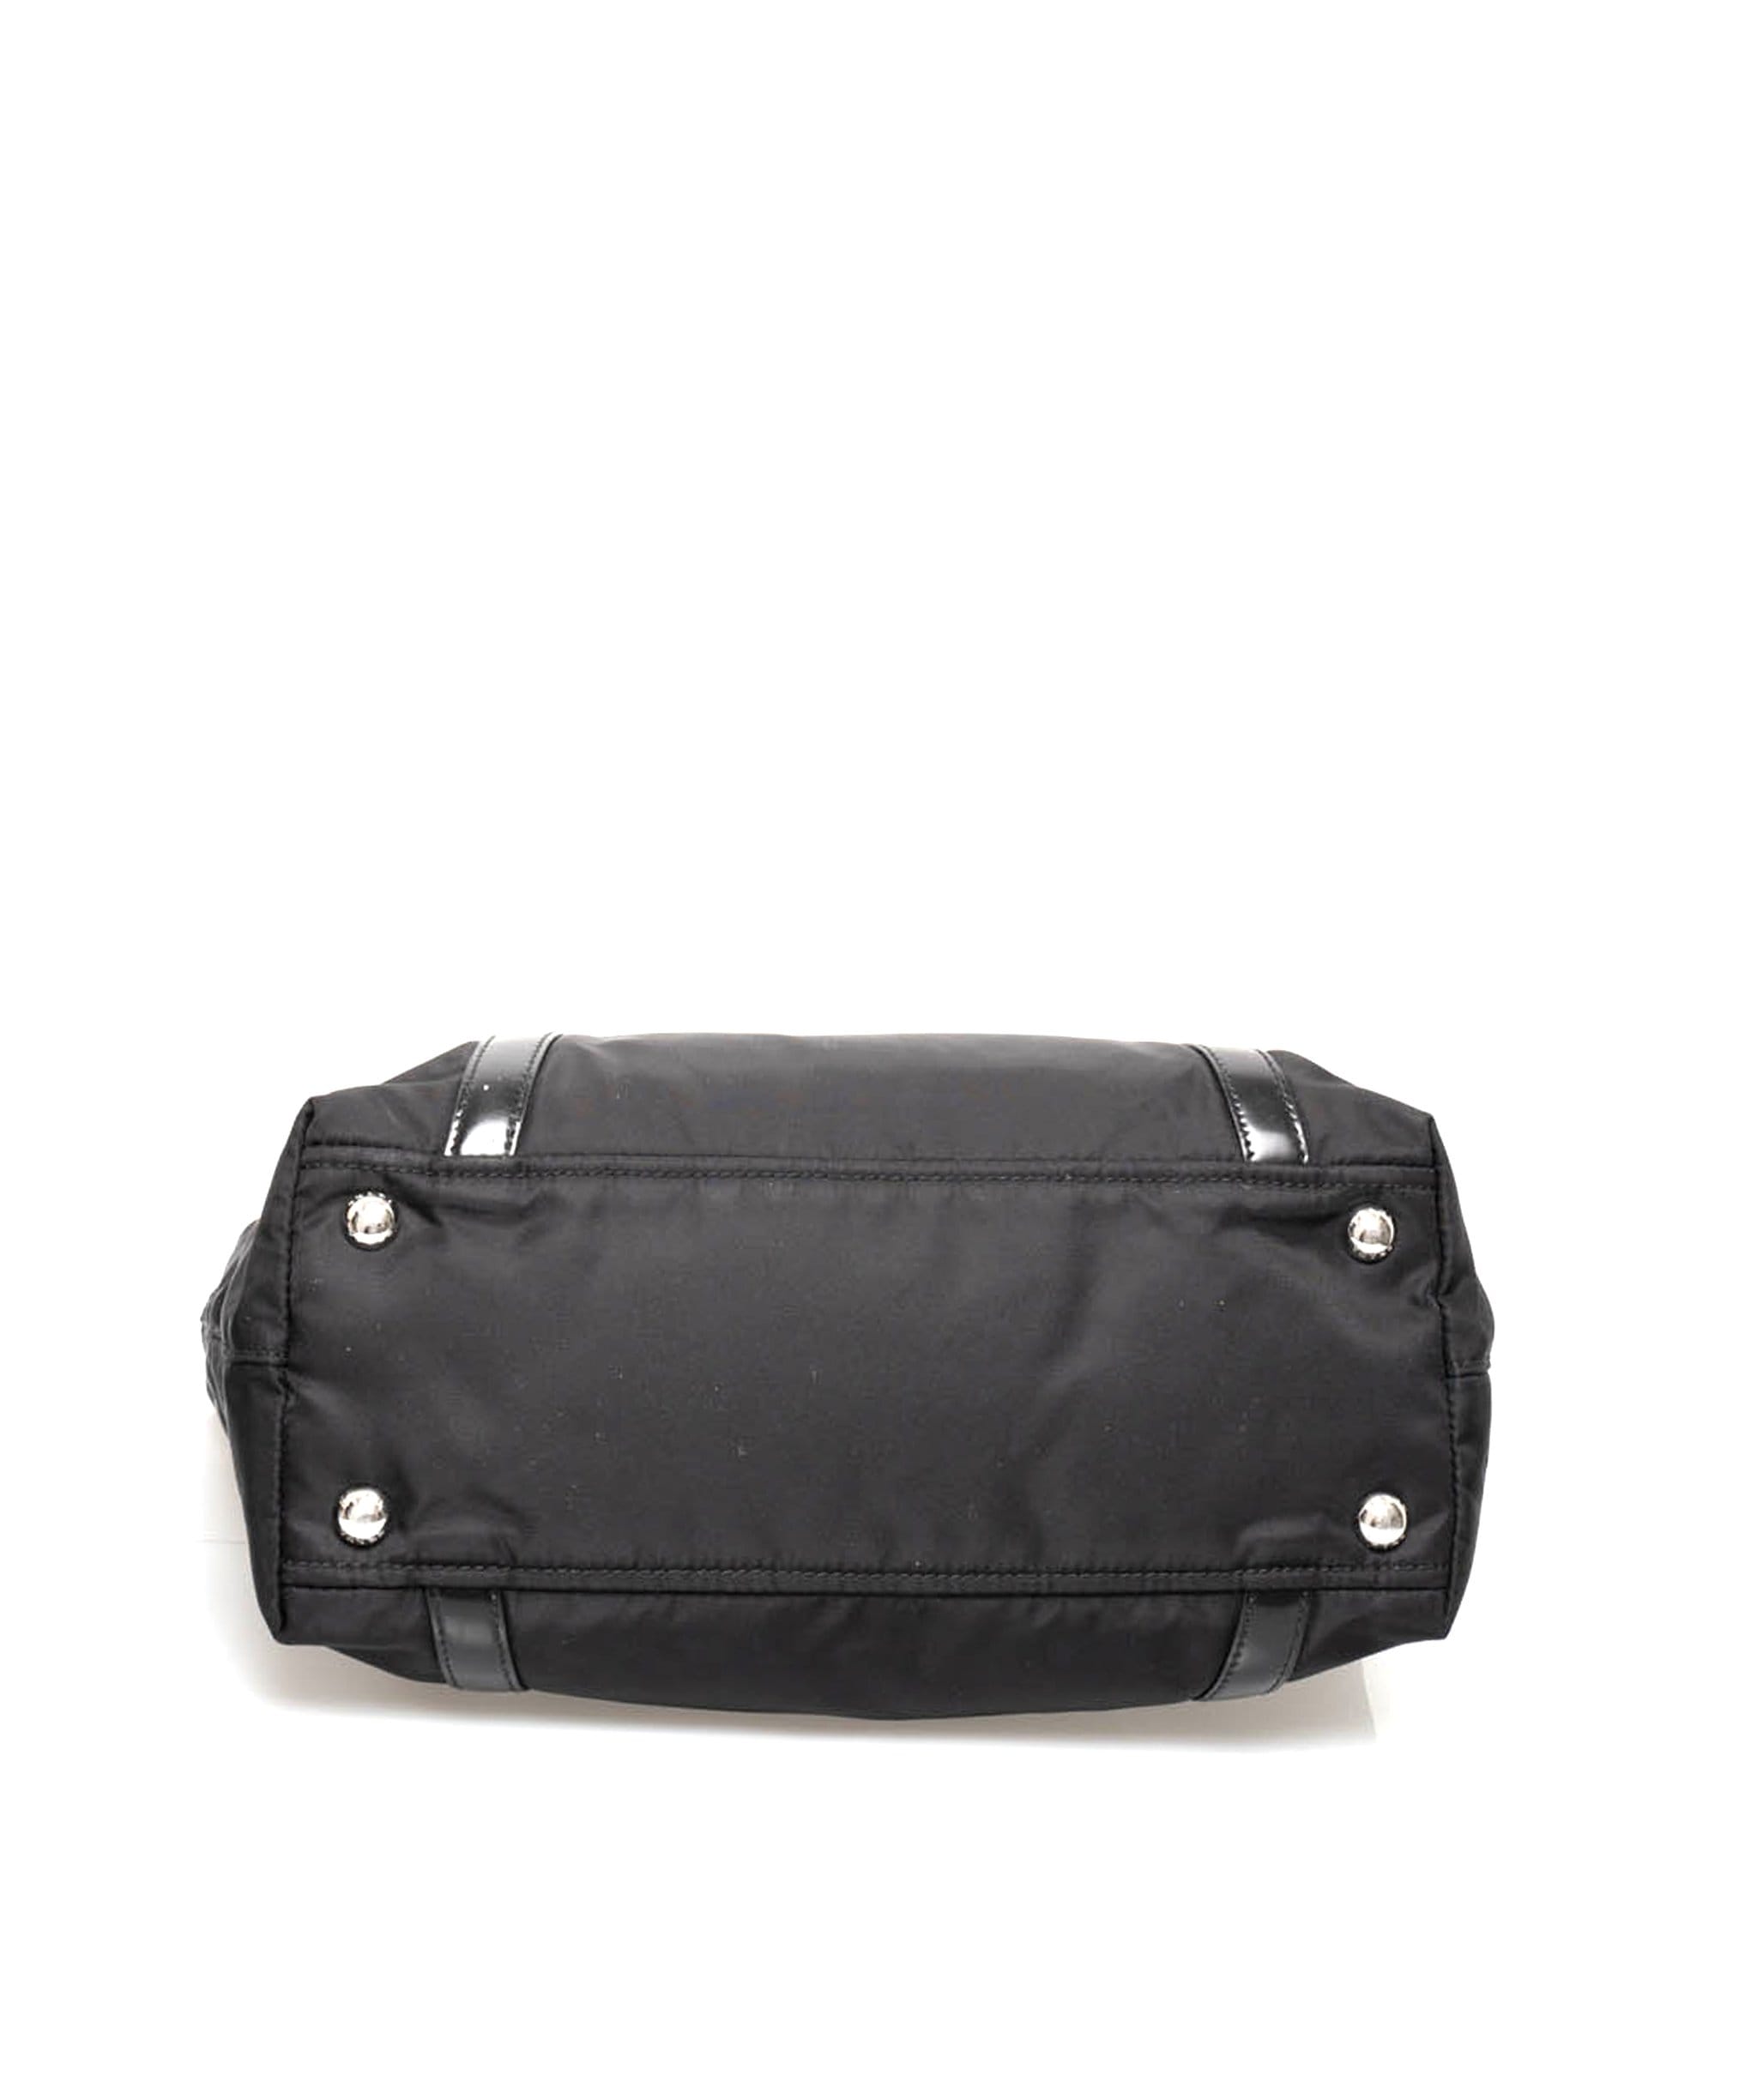 Prada Prada Black Nylon Top Handle Tote Bag  - AGL1376